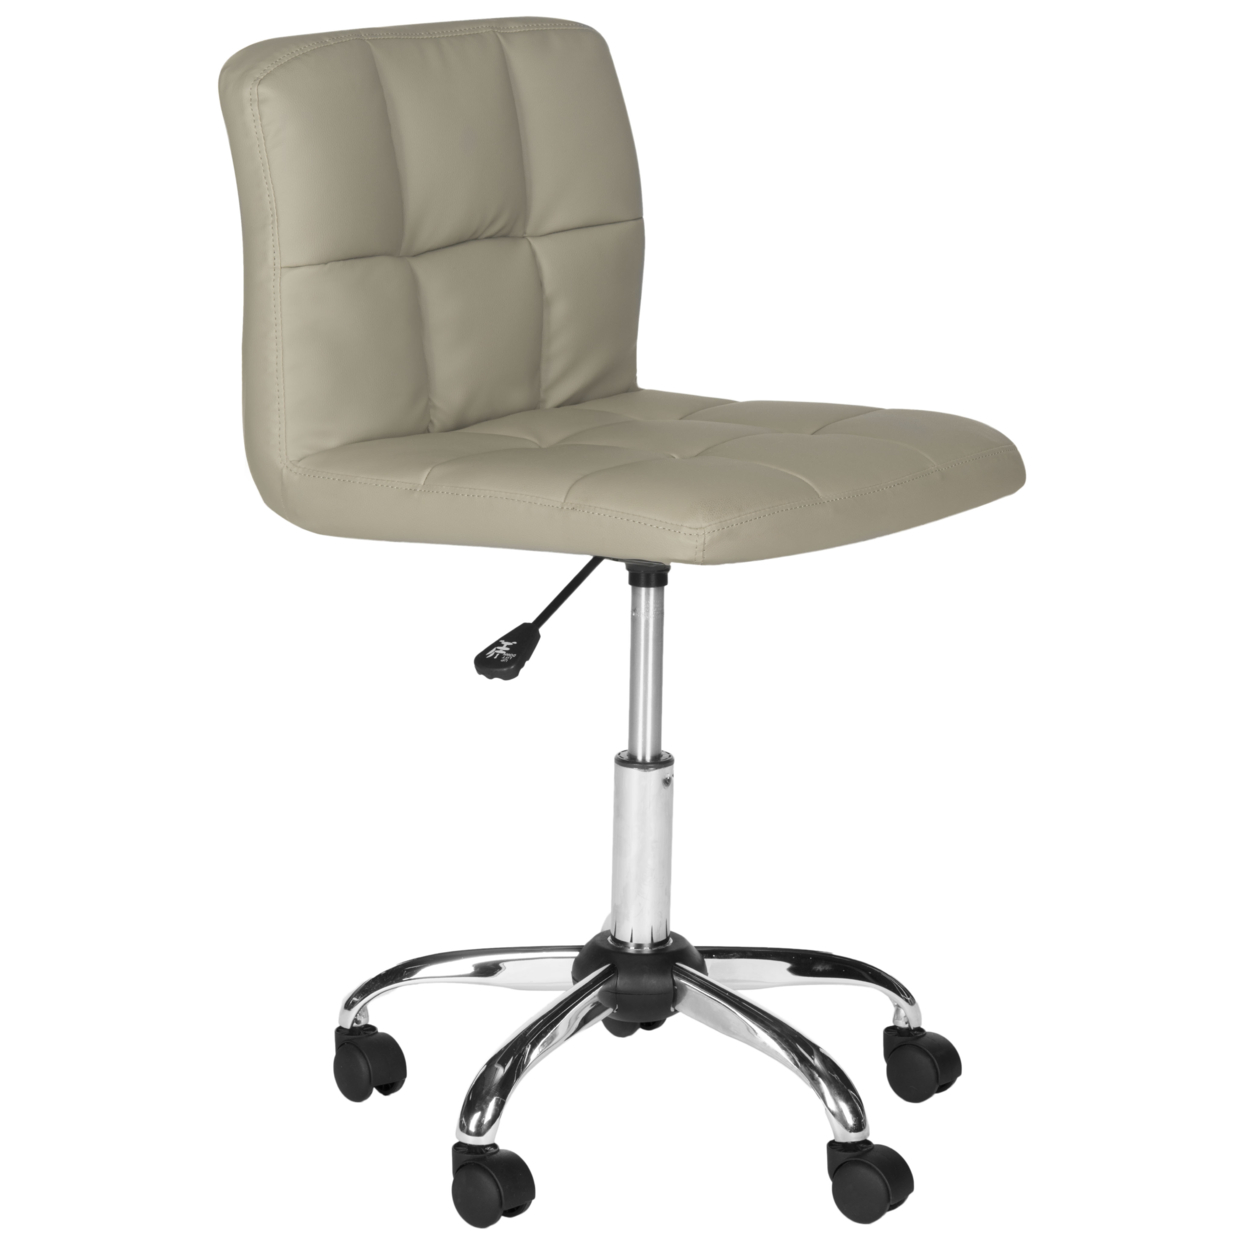 SAFAVIEH Brunner Desk Chair Grey